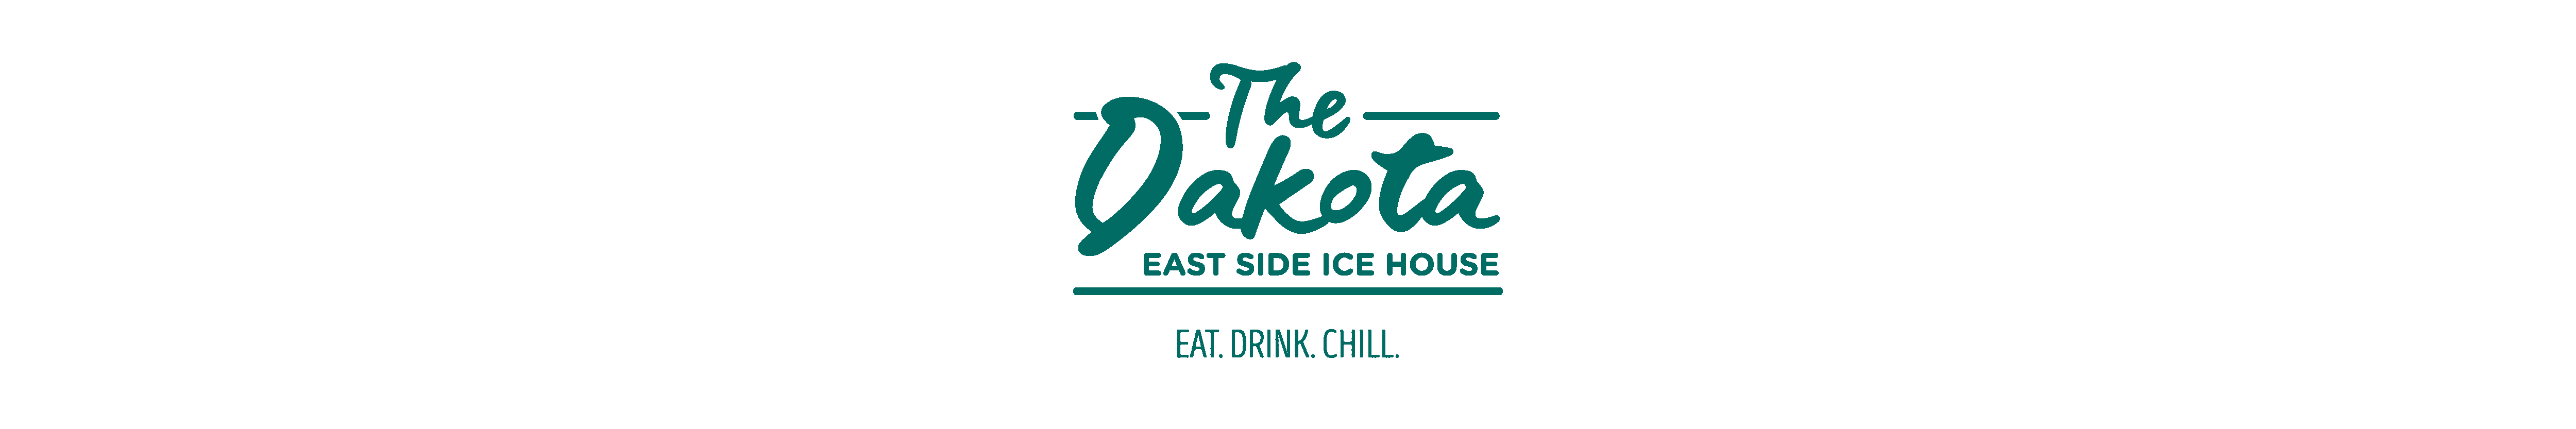 The Dakota East Side Ice House